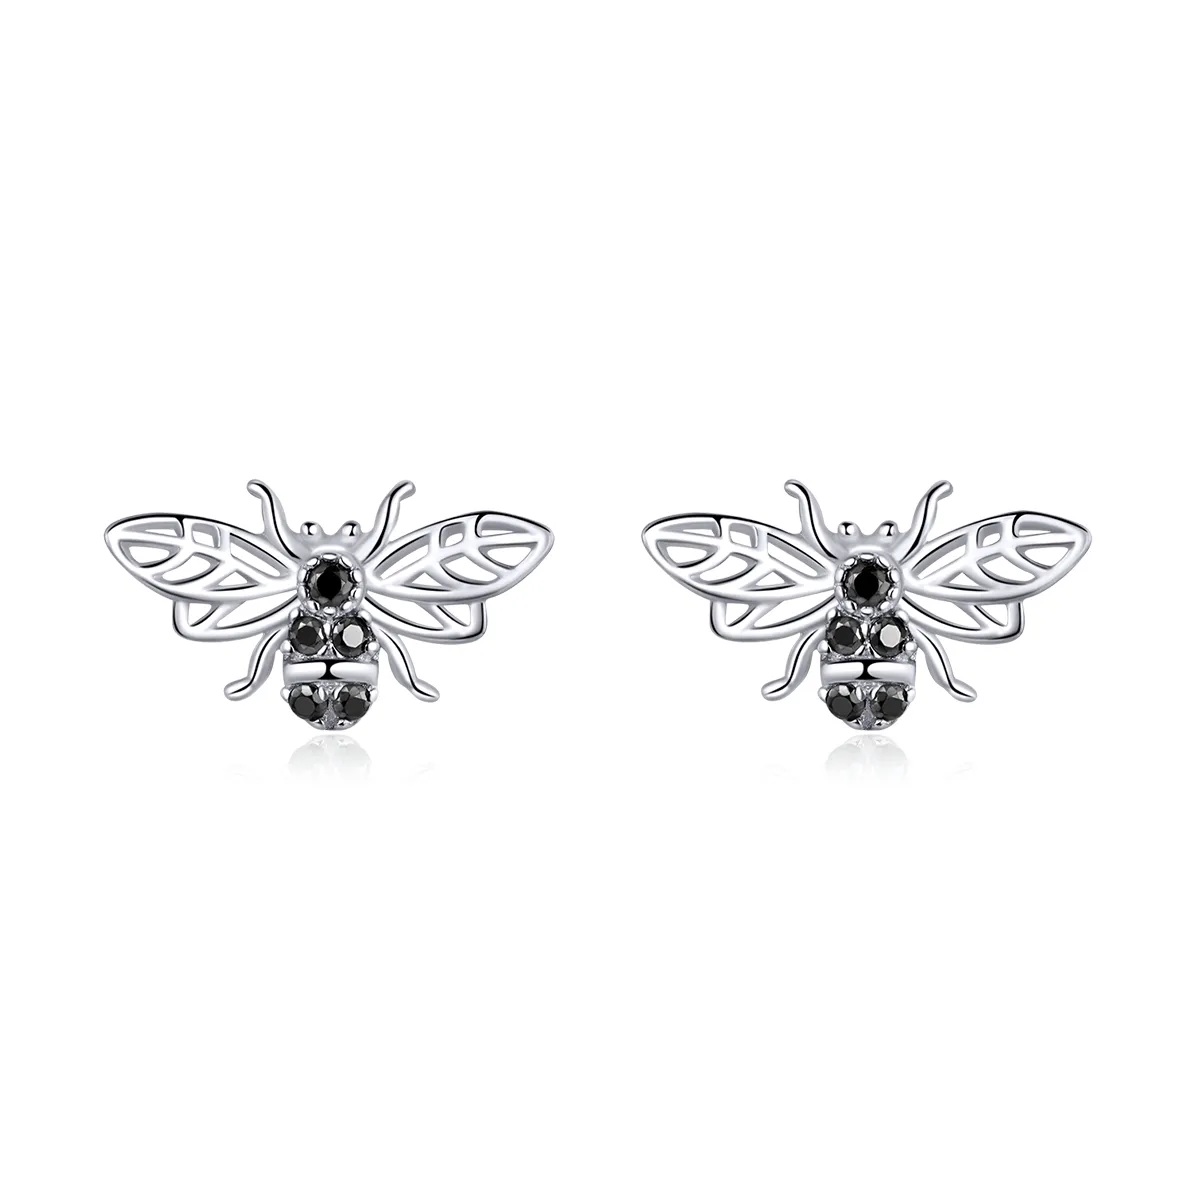 Pandora Style Silver Bee Stud Earrings - SCE846